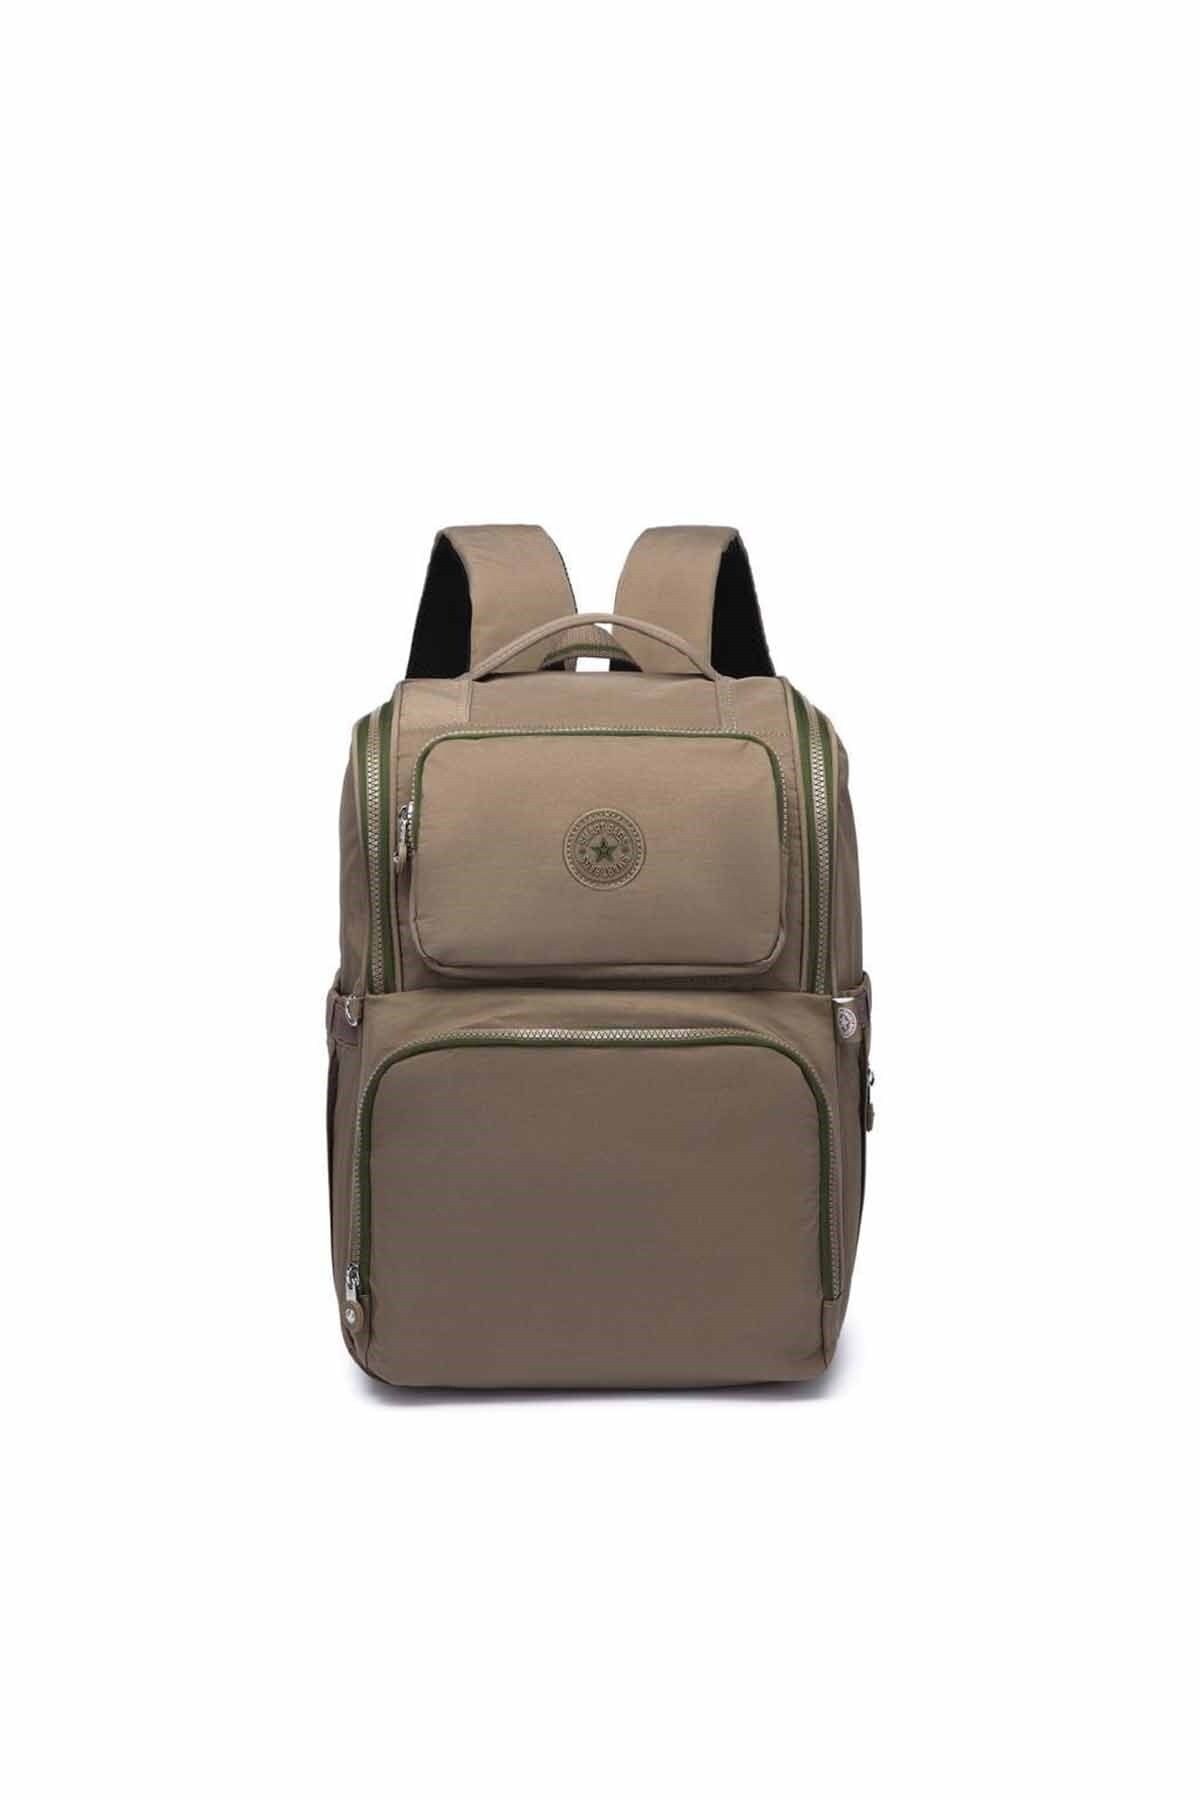 Smart Bags Smartbags Anne Bebek Sırt Çantası 2022-3000 Açık Kahve